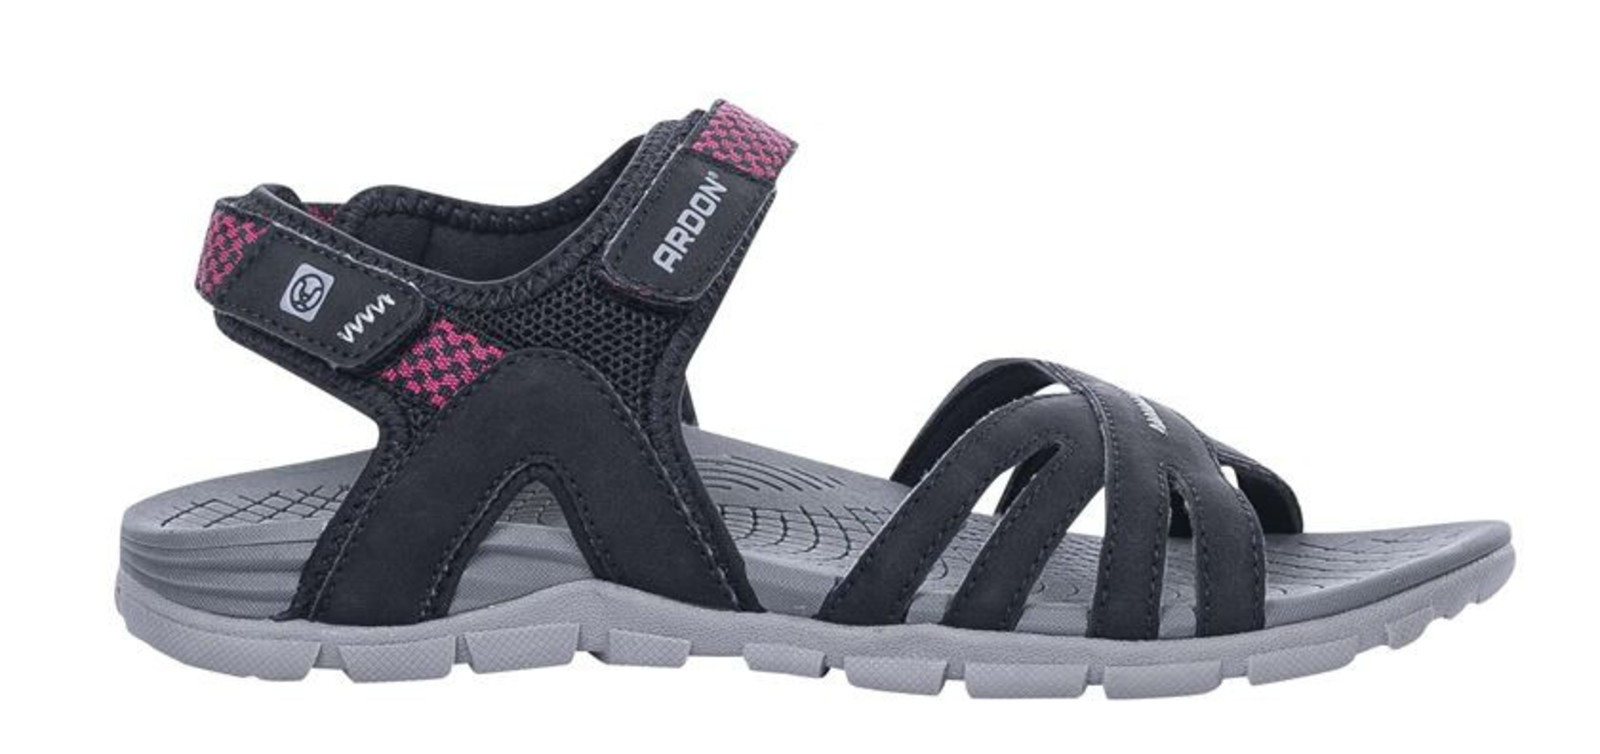 Dámske sandále Ardon Phyllis - veľkosť: 40, farba: čierna/ružová